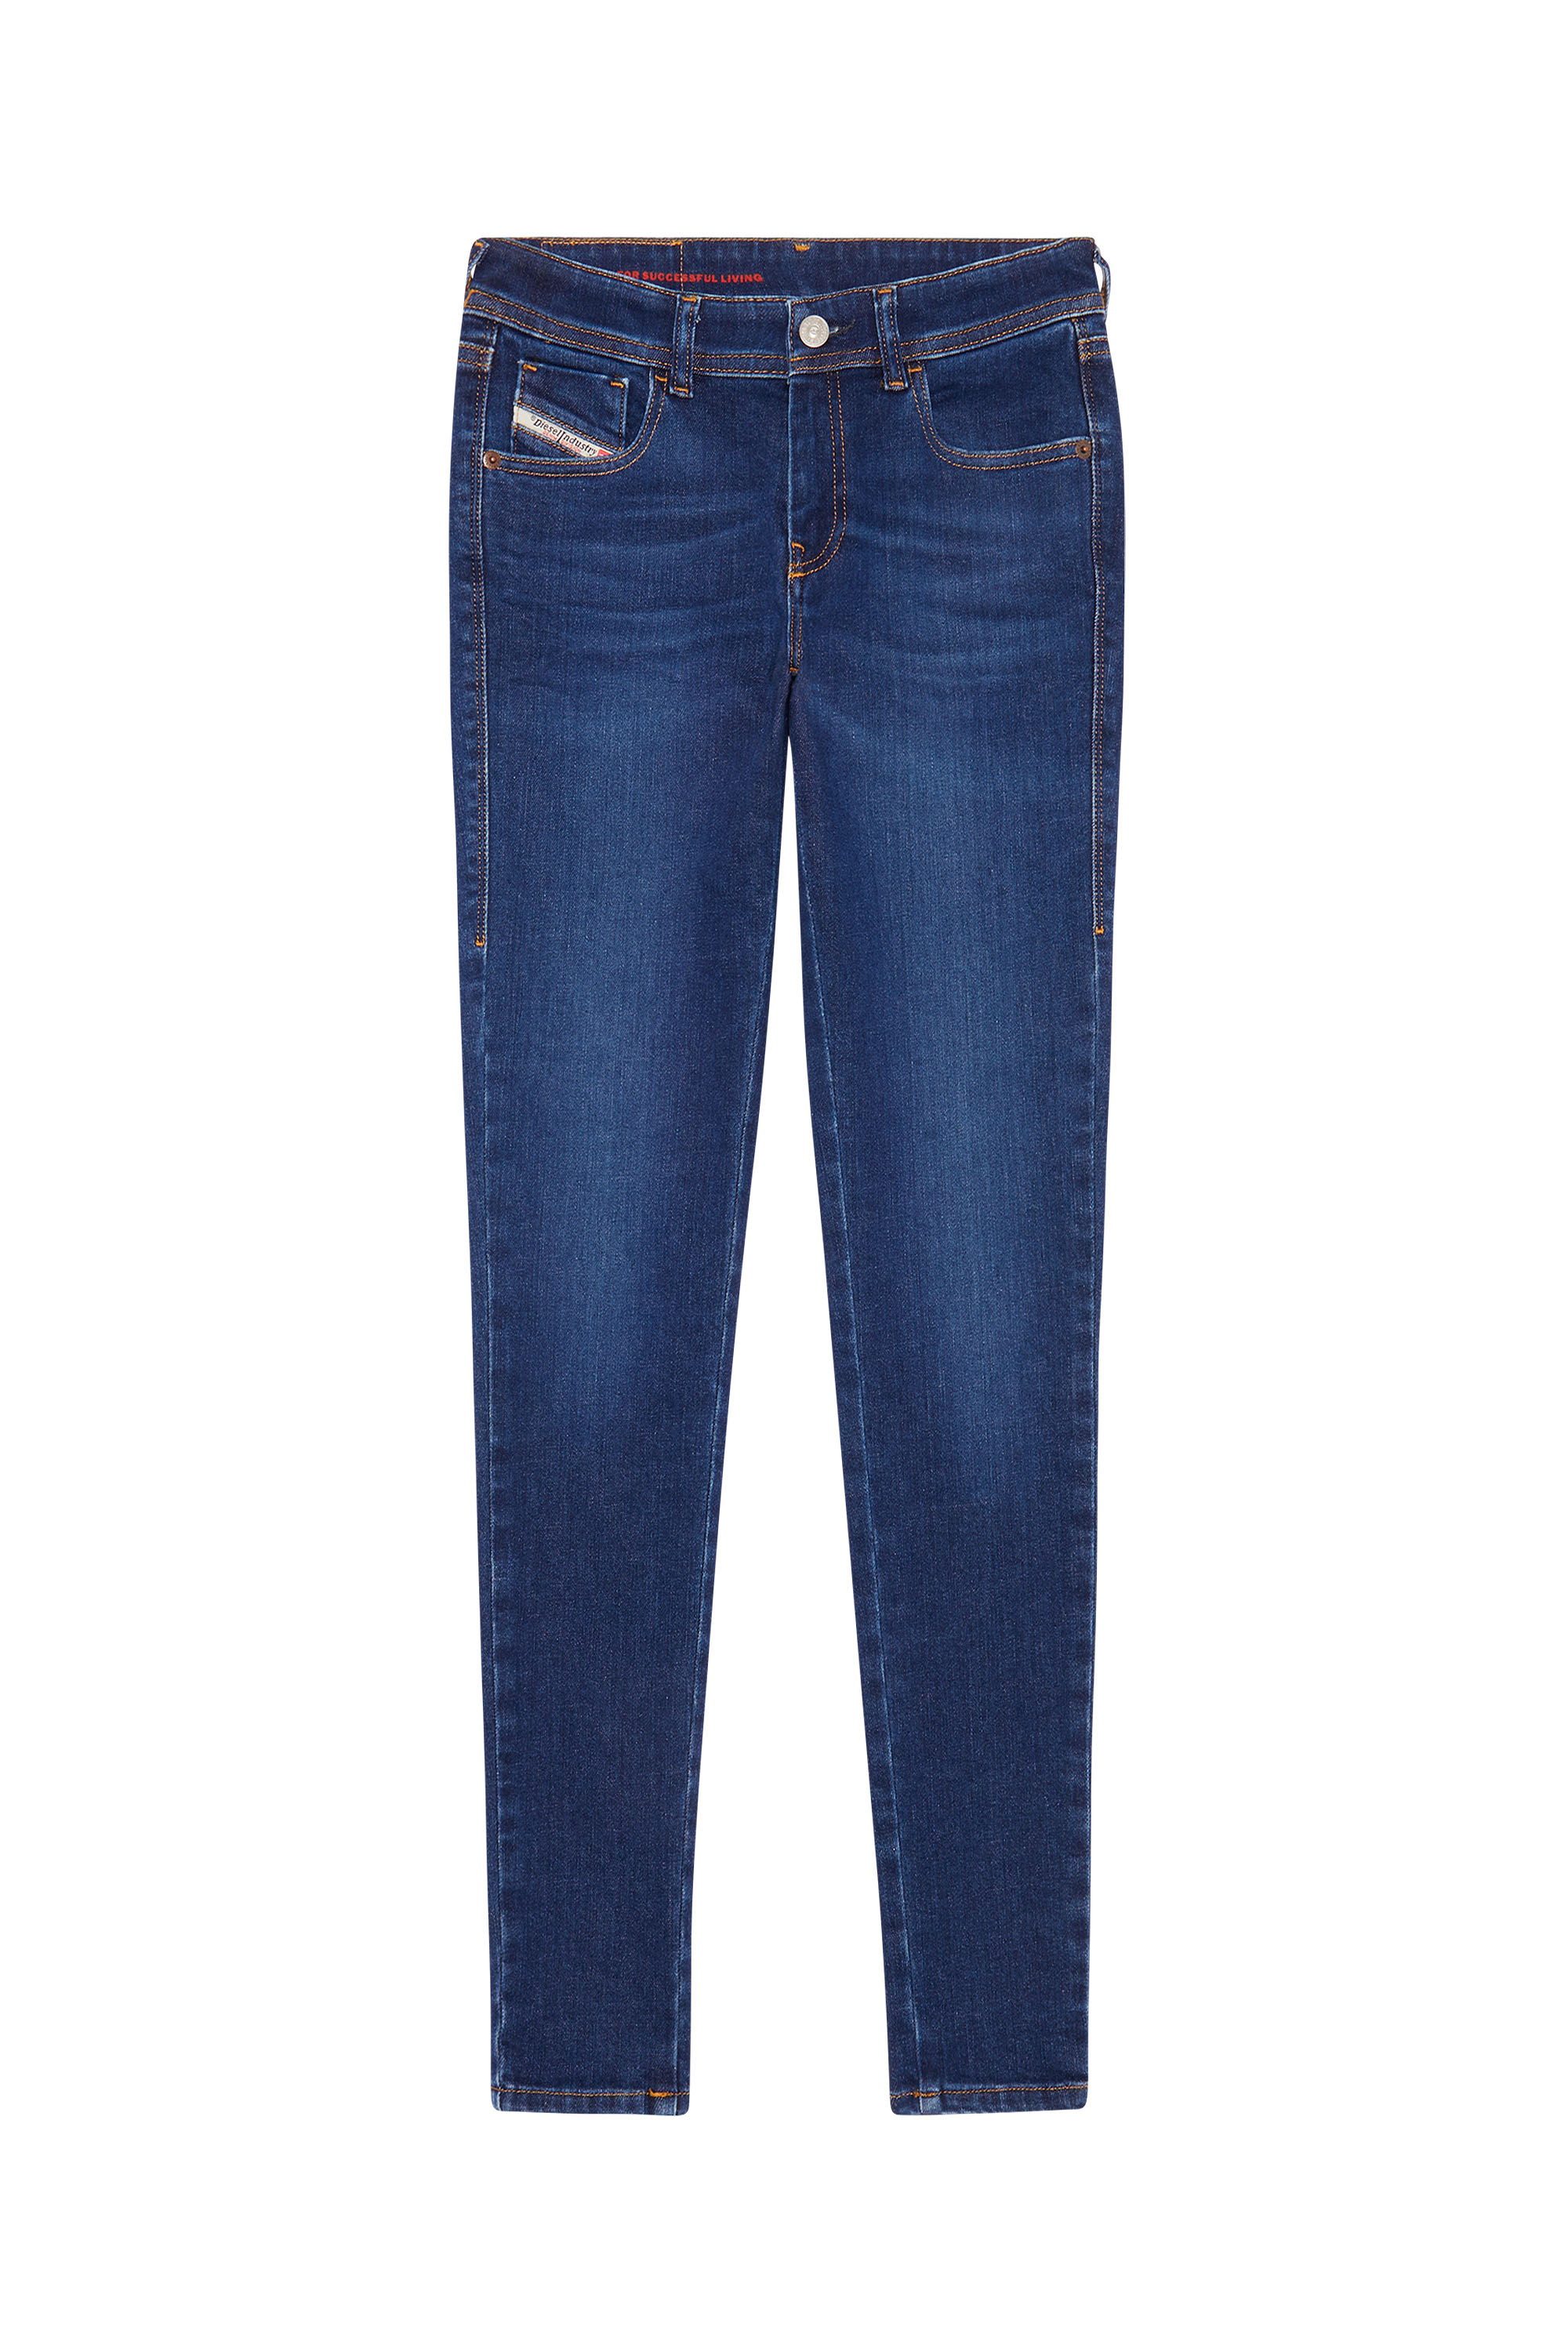 2018 SLANDY-LOW 09C19 Super skinny Jeans, Bleu Foncé - Jeans